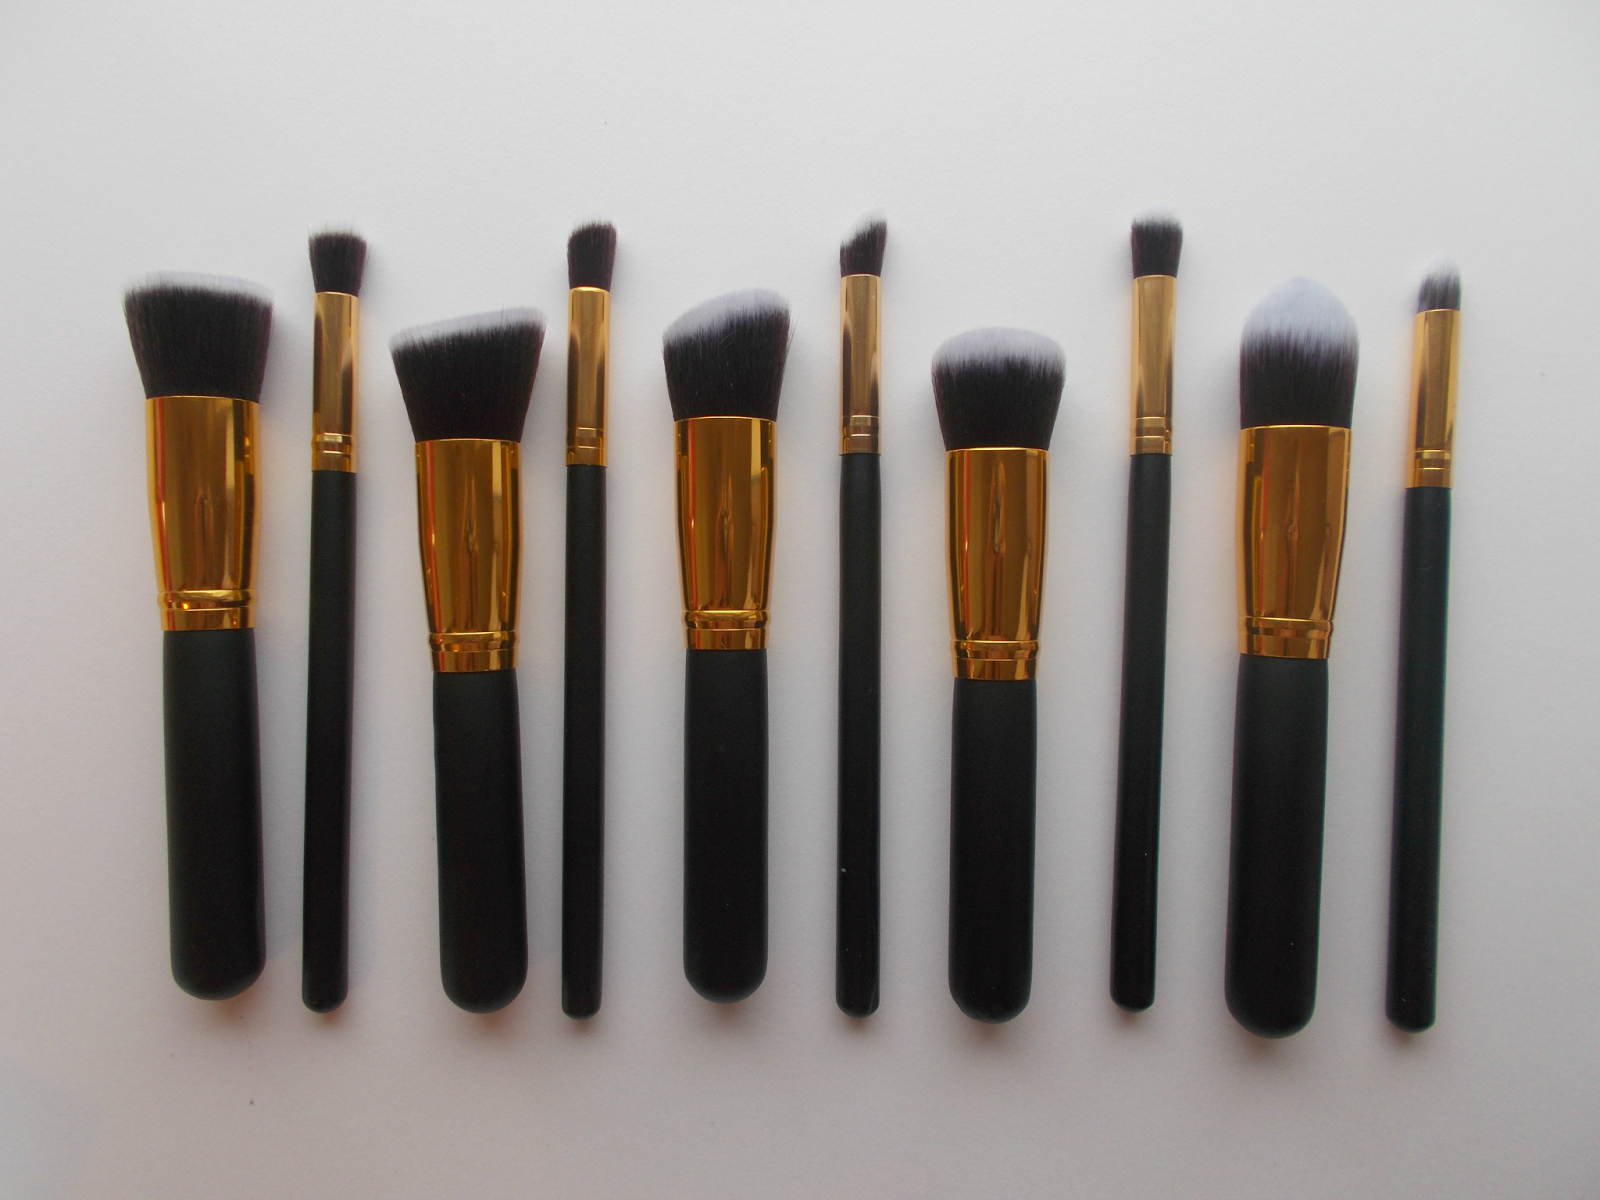 cheap unbranded yet amazing amazon makeup brushes